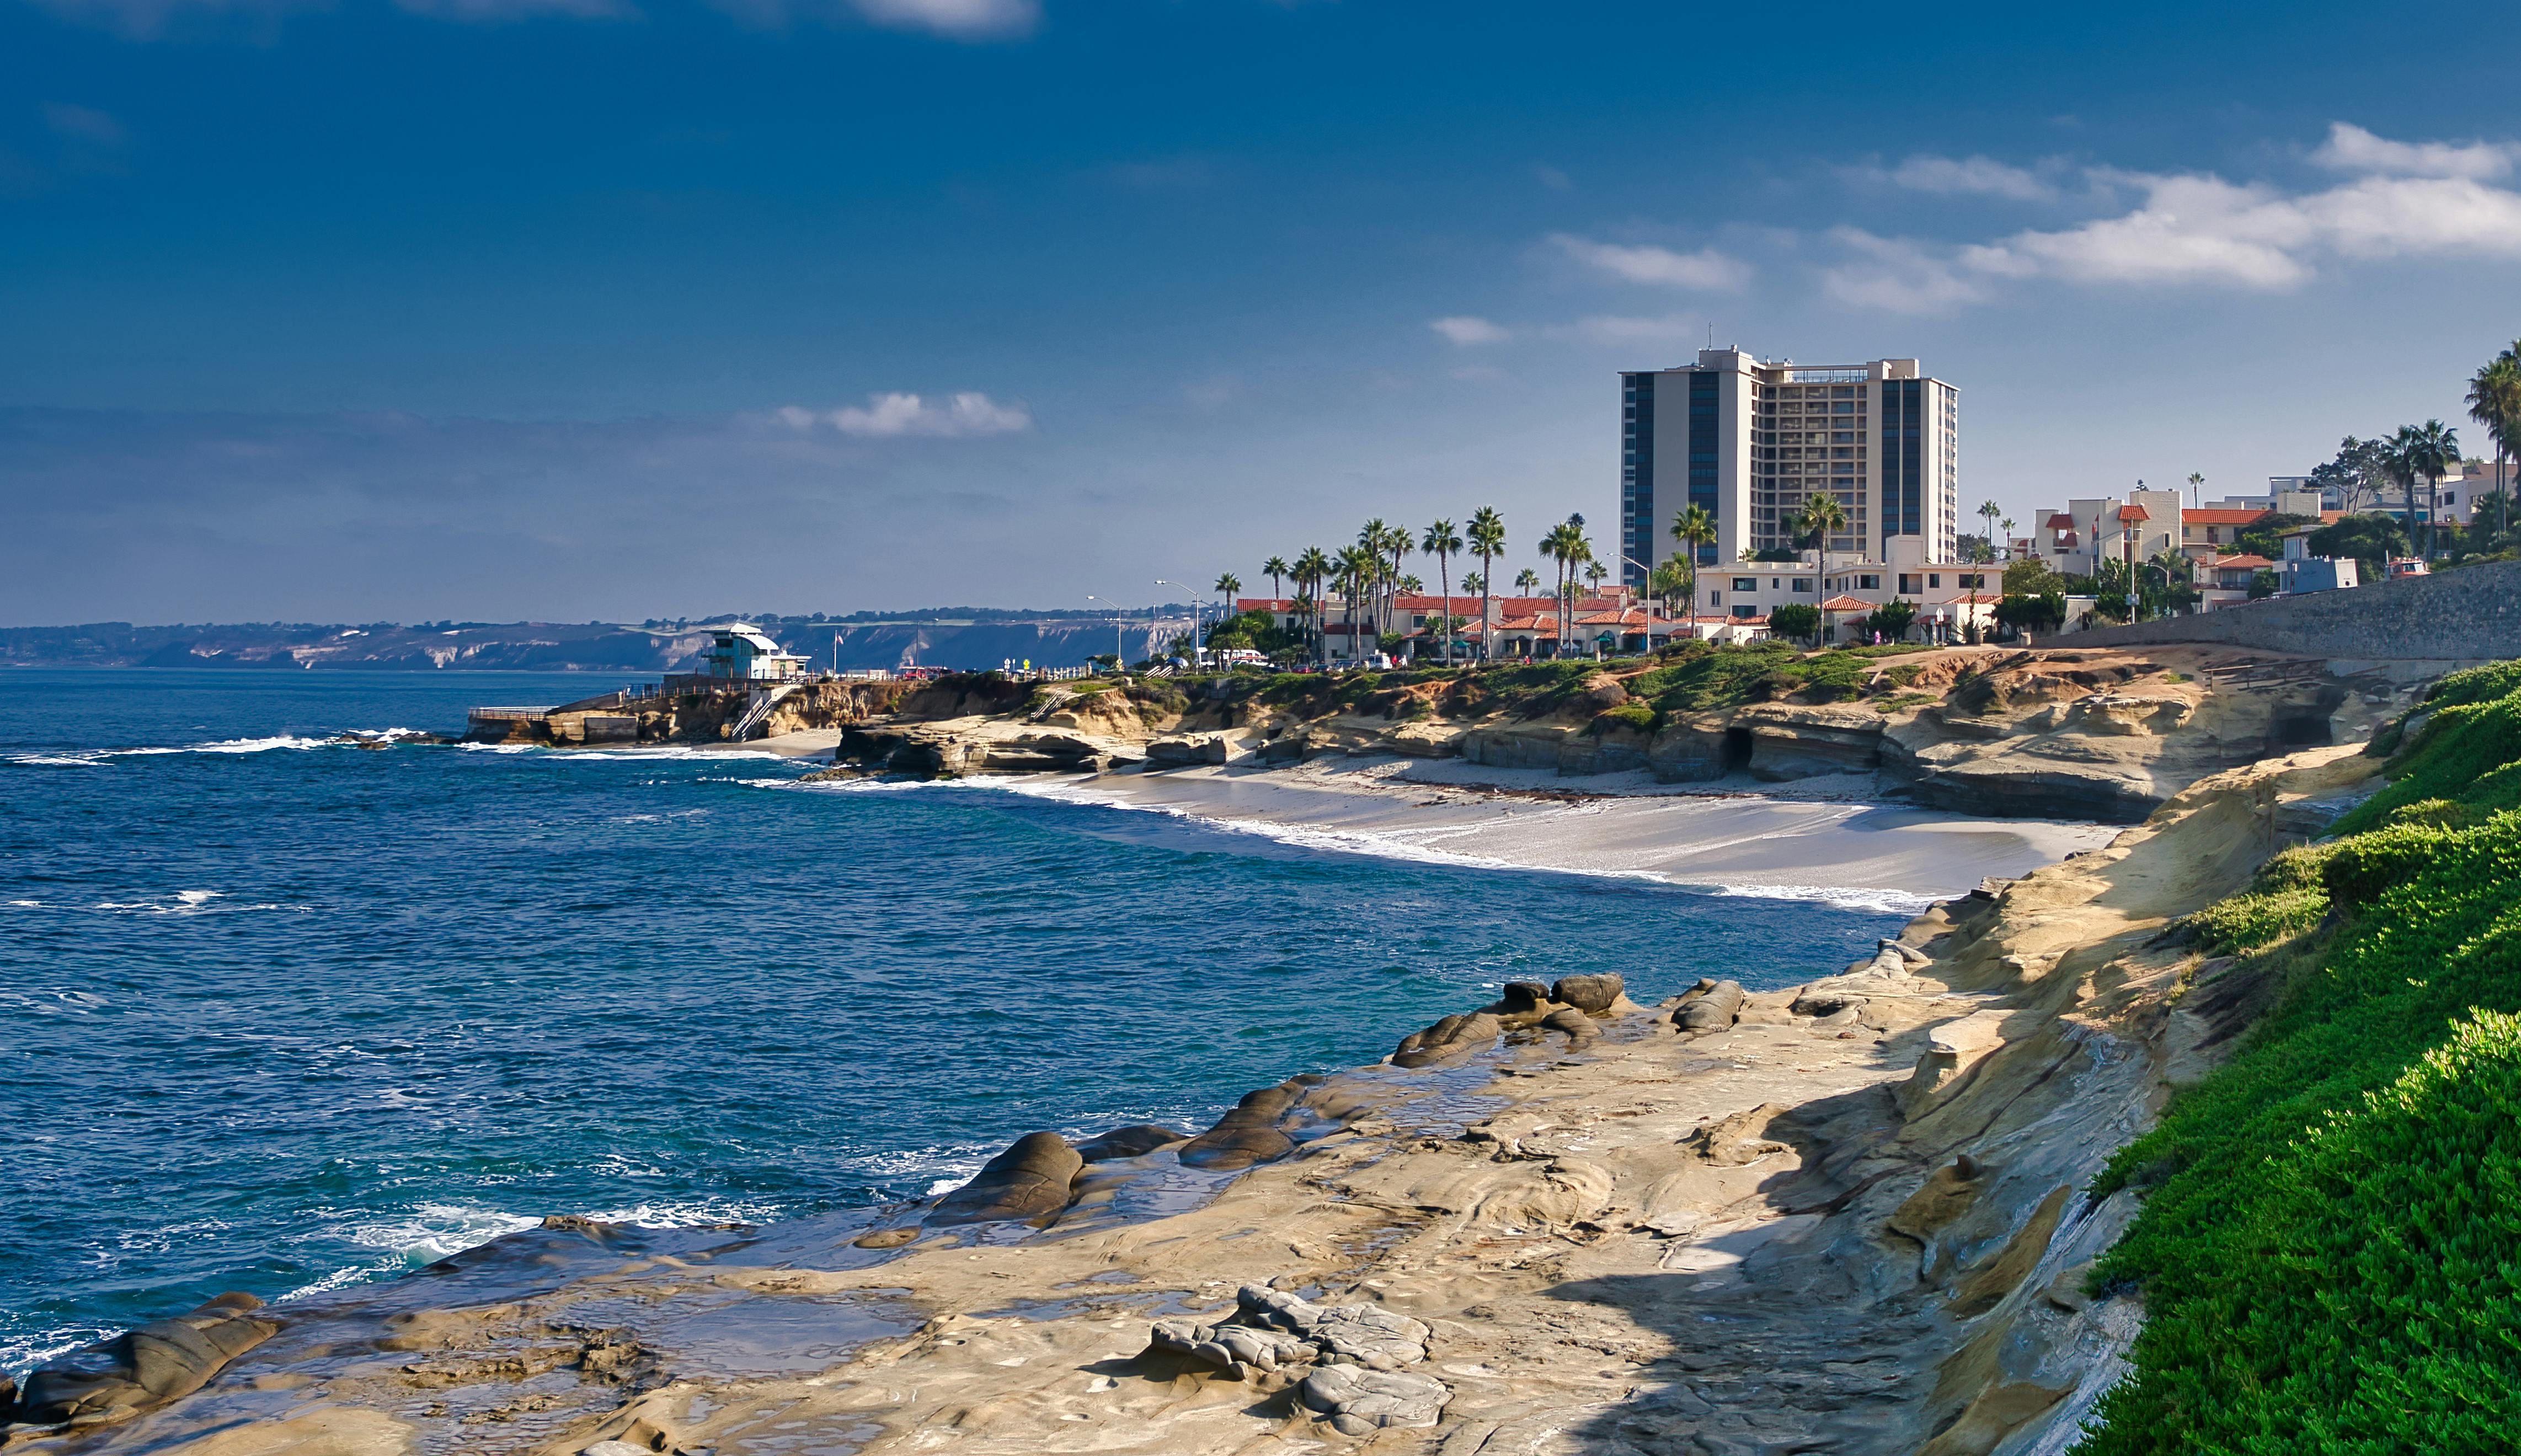 La Jolla: Explore California's Riviera on a self-guided audio tour